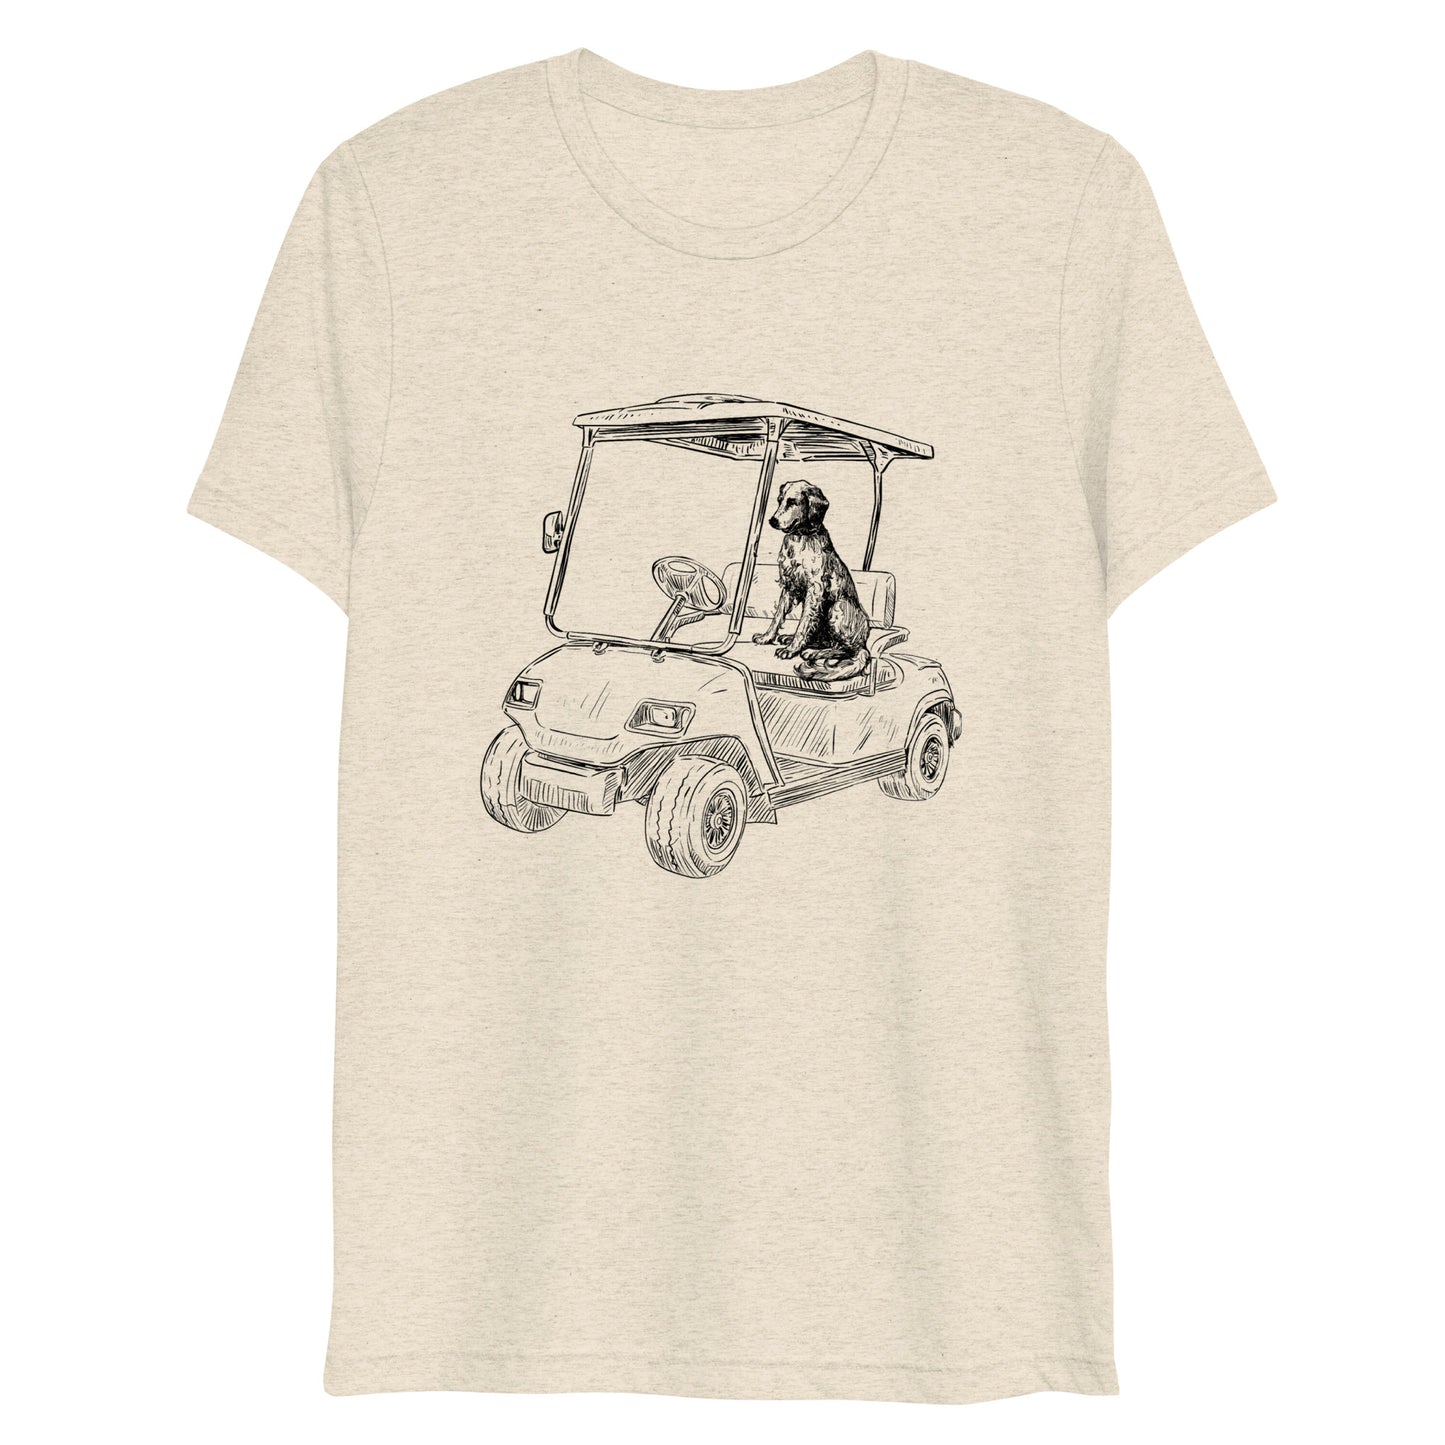 Cart Life Short sleeve t-shirt